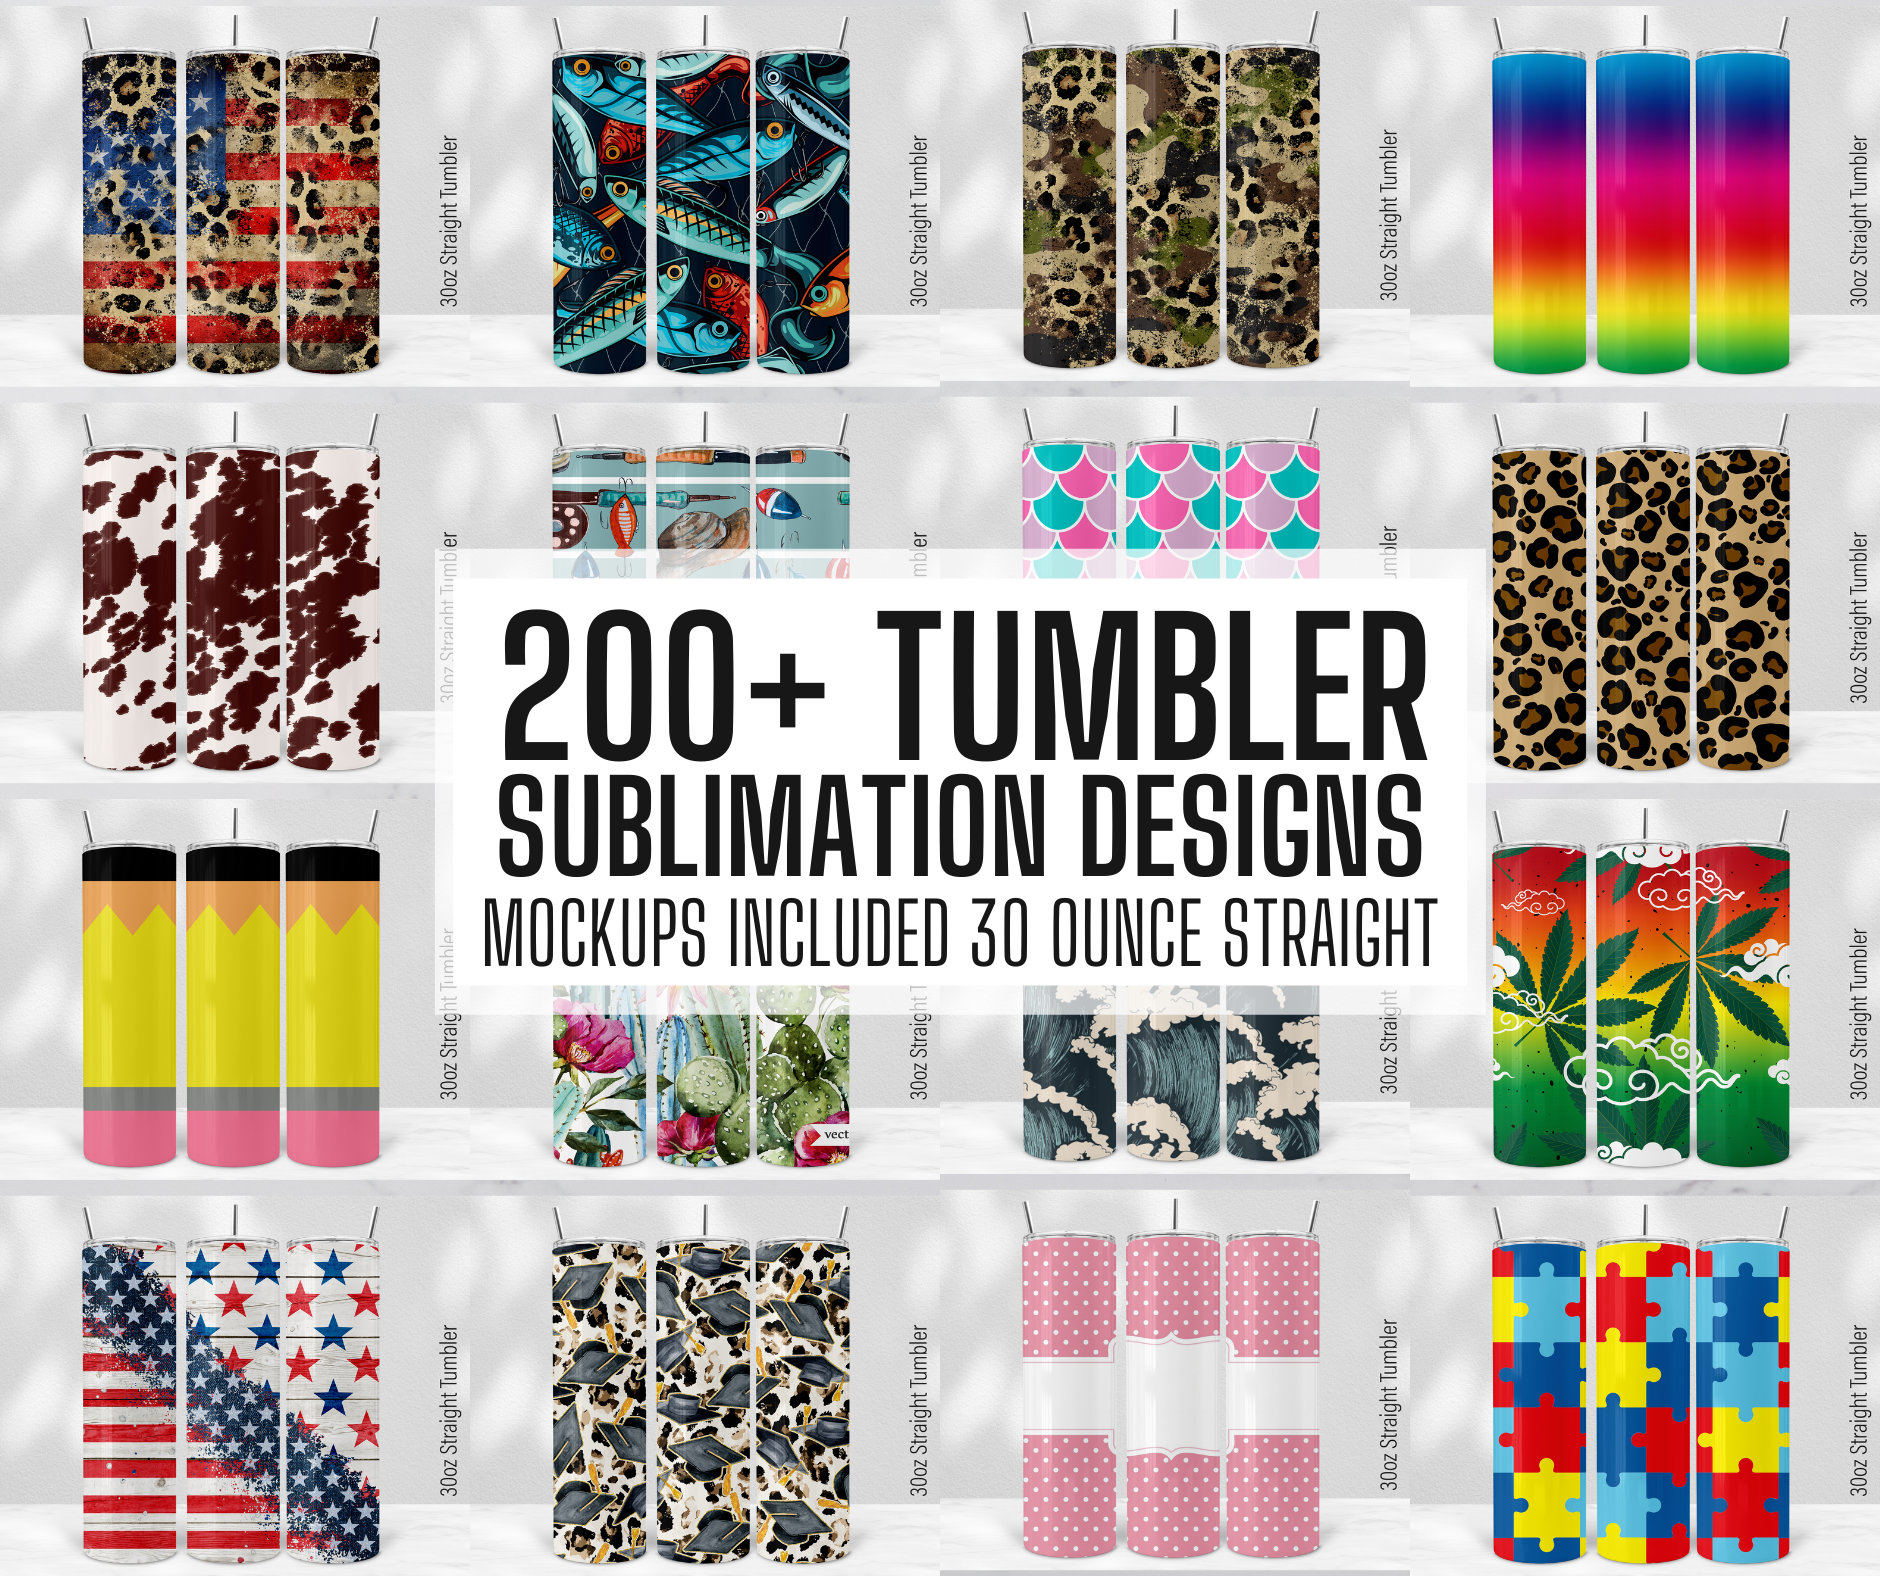 30 Oz Tumbler Sublimation Designs